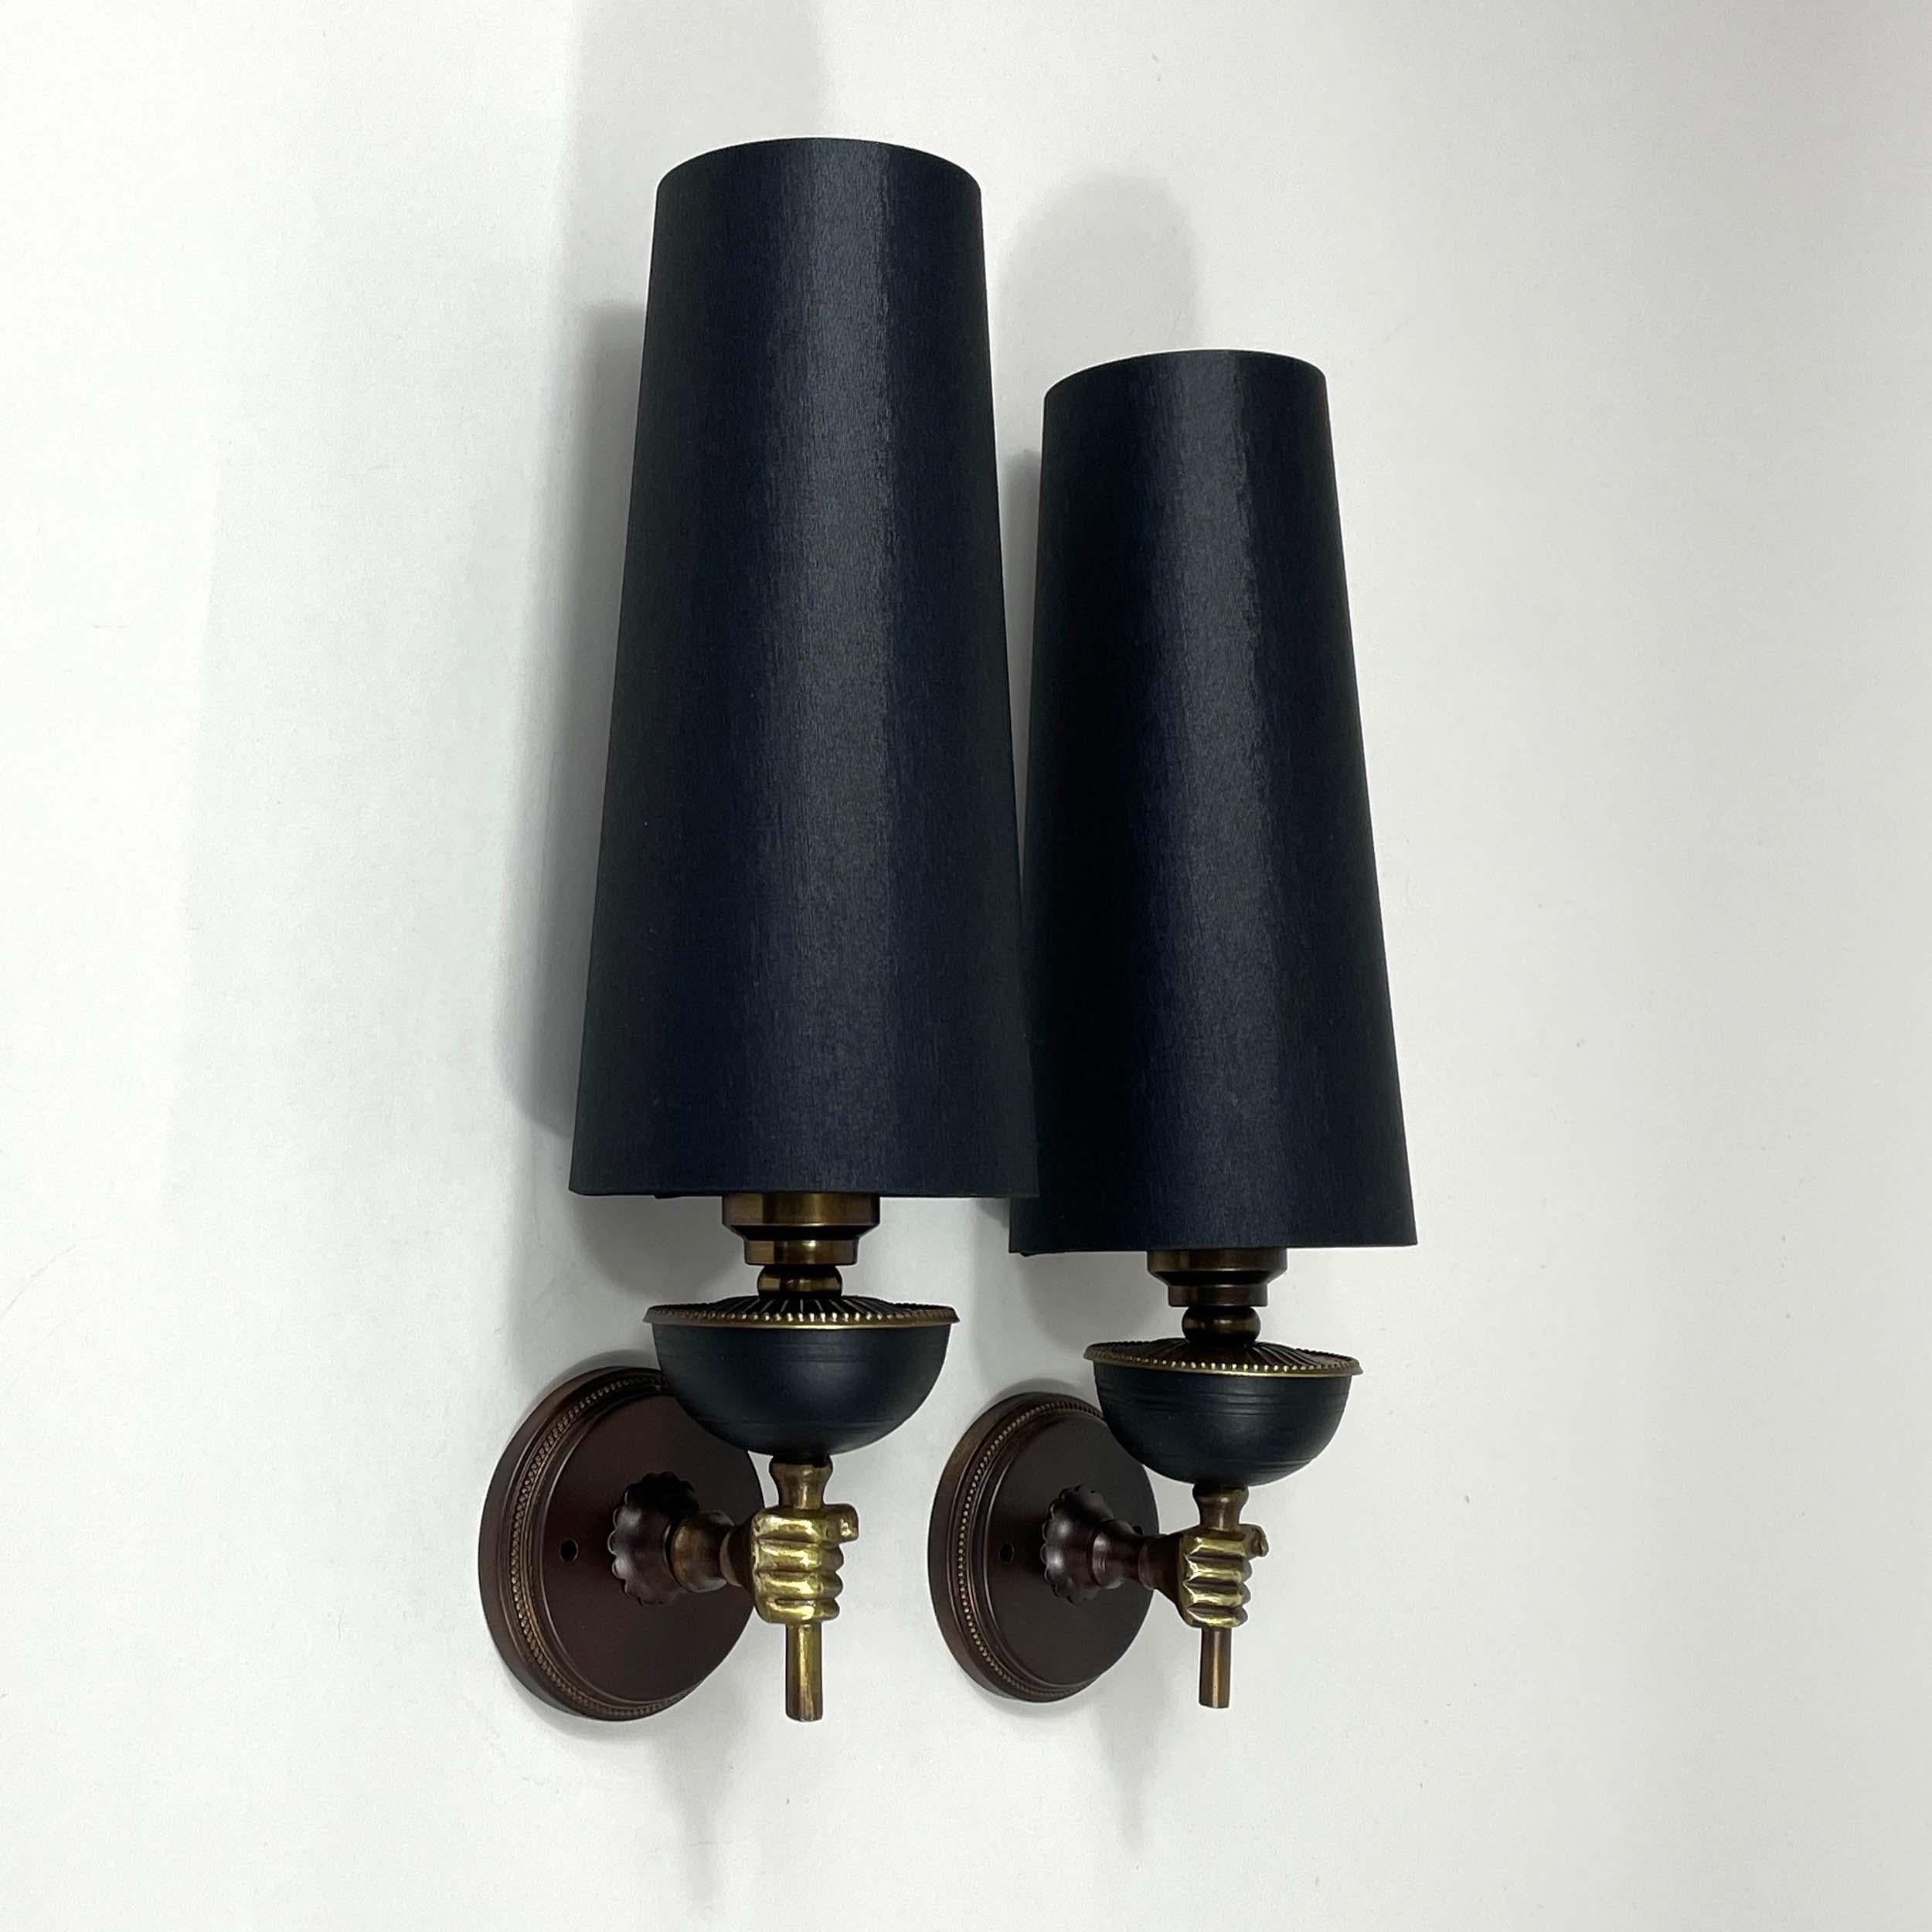 Ces appliques vintage inhabituelles ont été conçues et fabriquées en France dans les années 1950. Il s'agit de lampes torchères en laiton / bronze avec des abat-jour en tissu de soie noire (neufs) faits à la main.

Câblées pour une utilisation aux